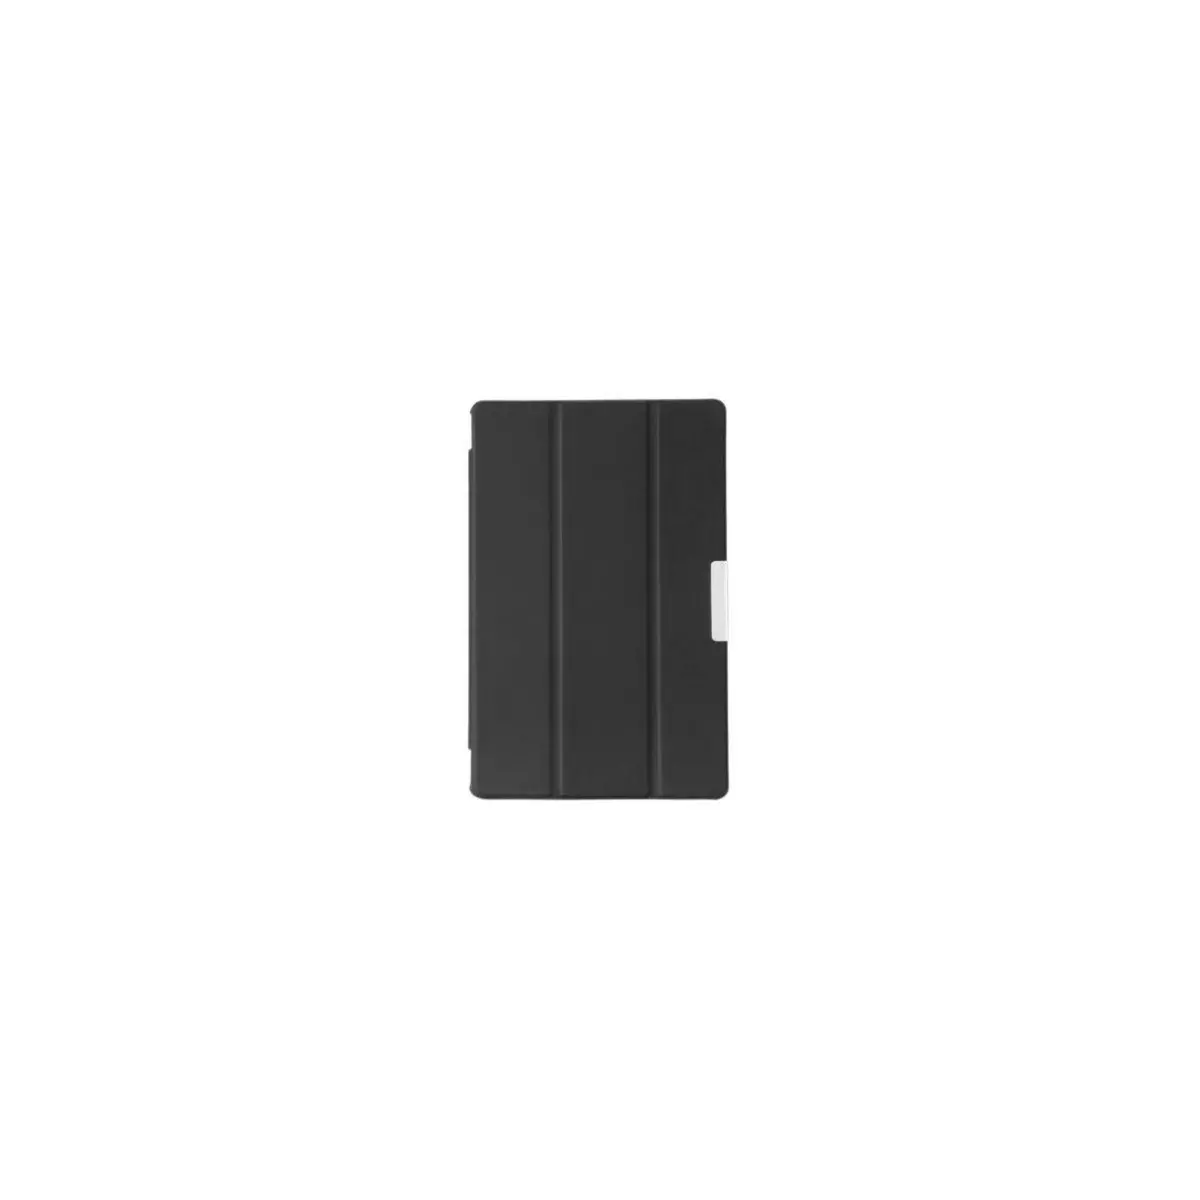 We Etui tablette Lenovo M10+ noir